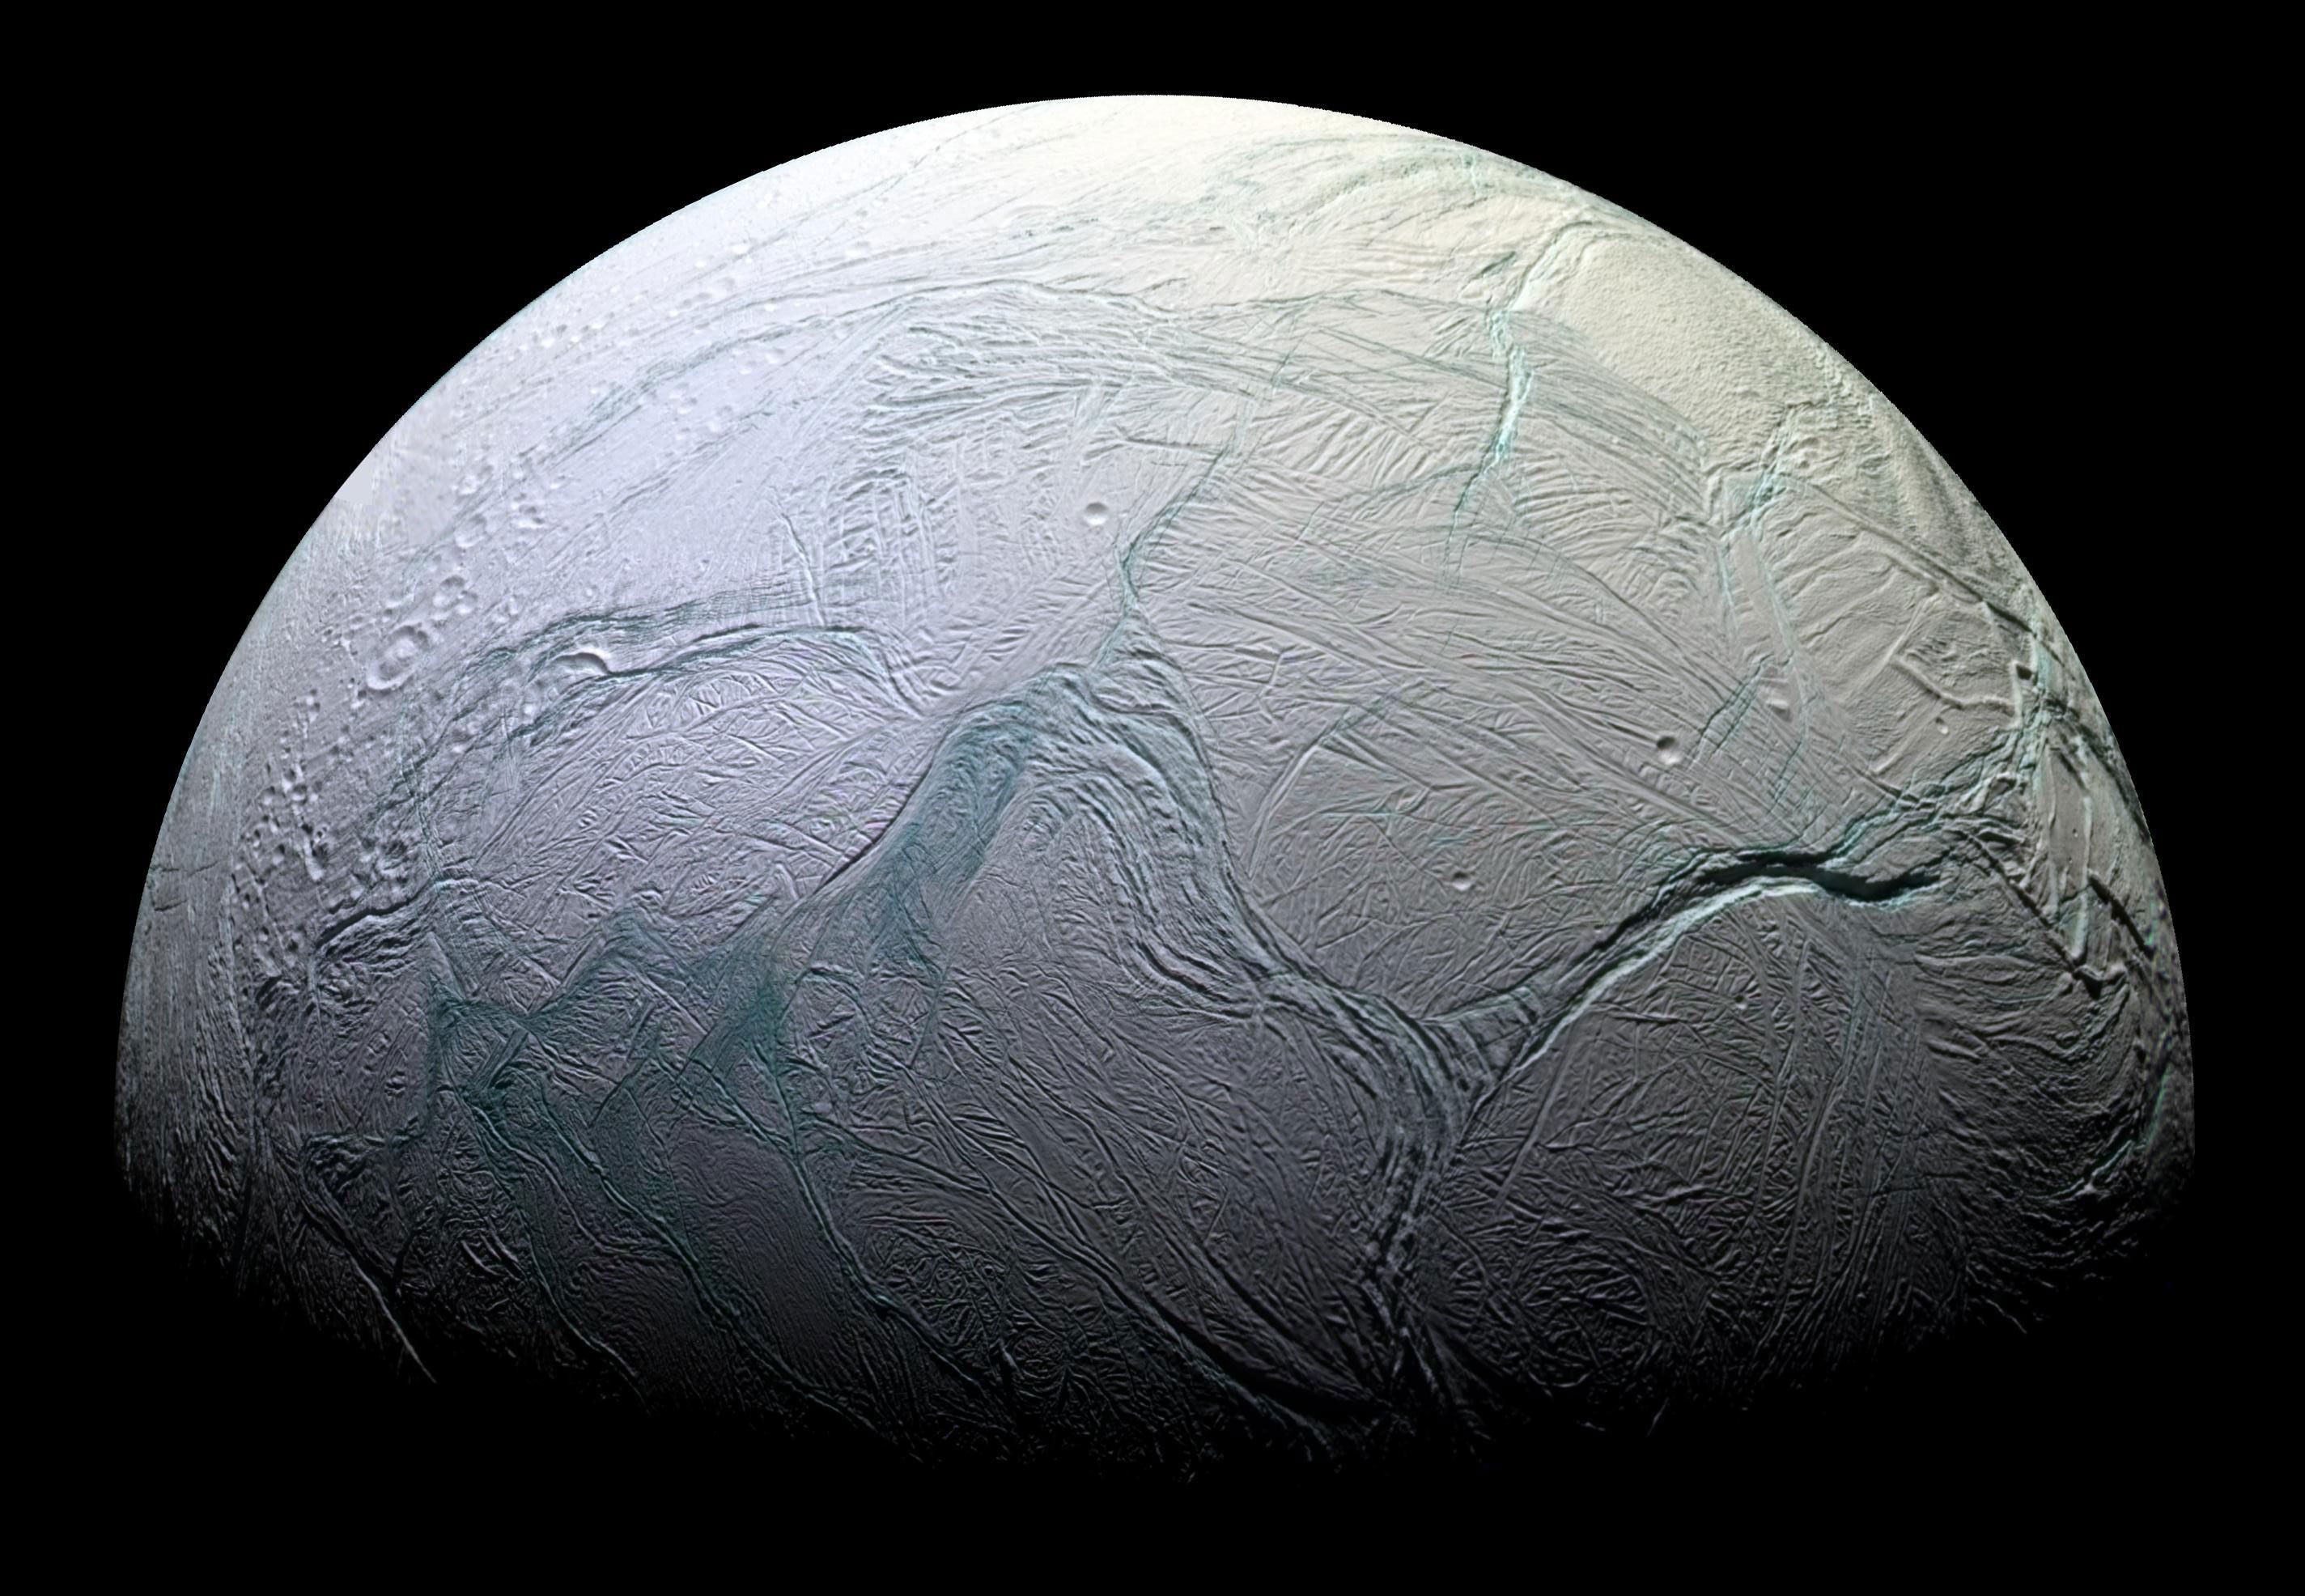 Ученые обнаружили внутри спутника Сатурна инопланетную жизнь